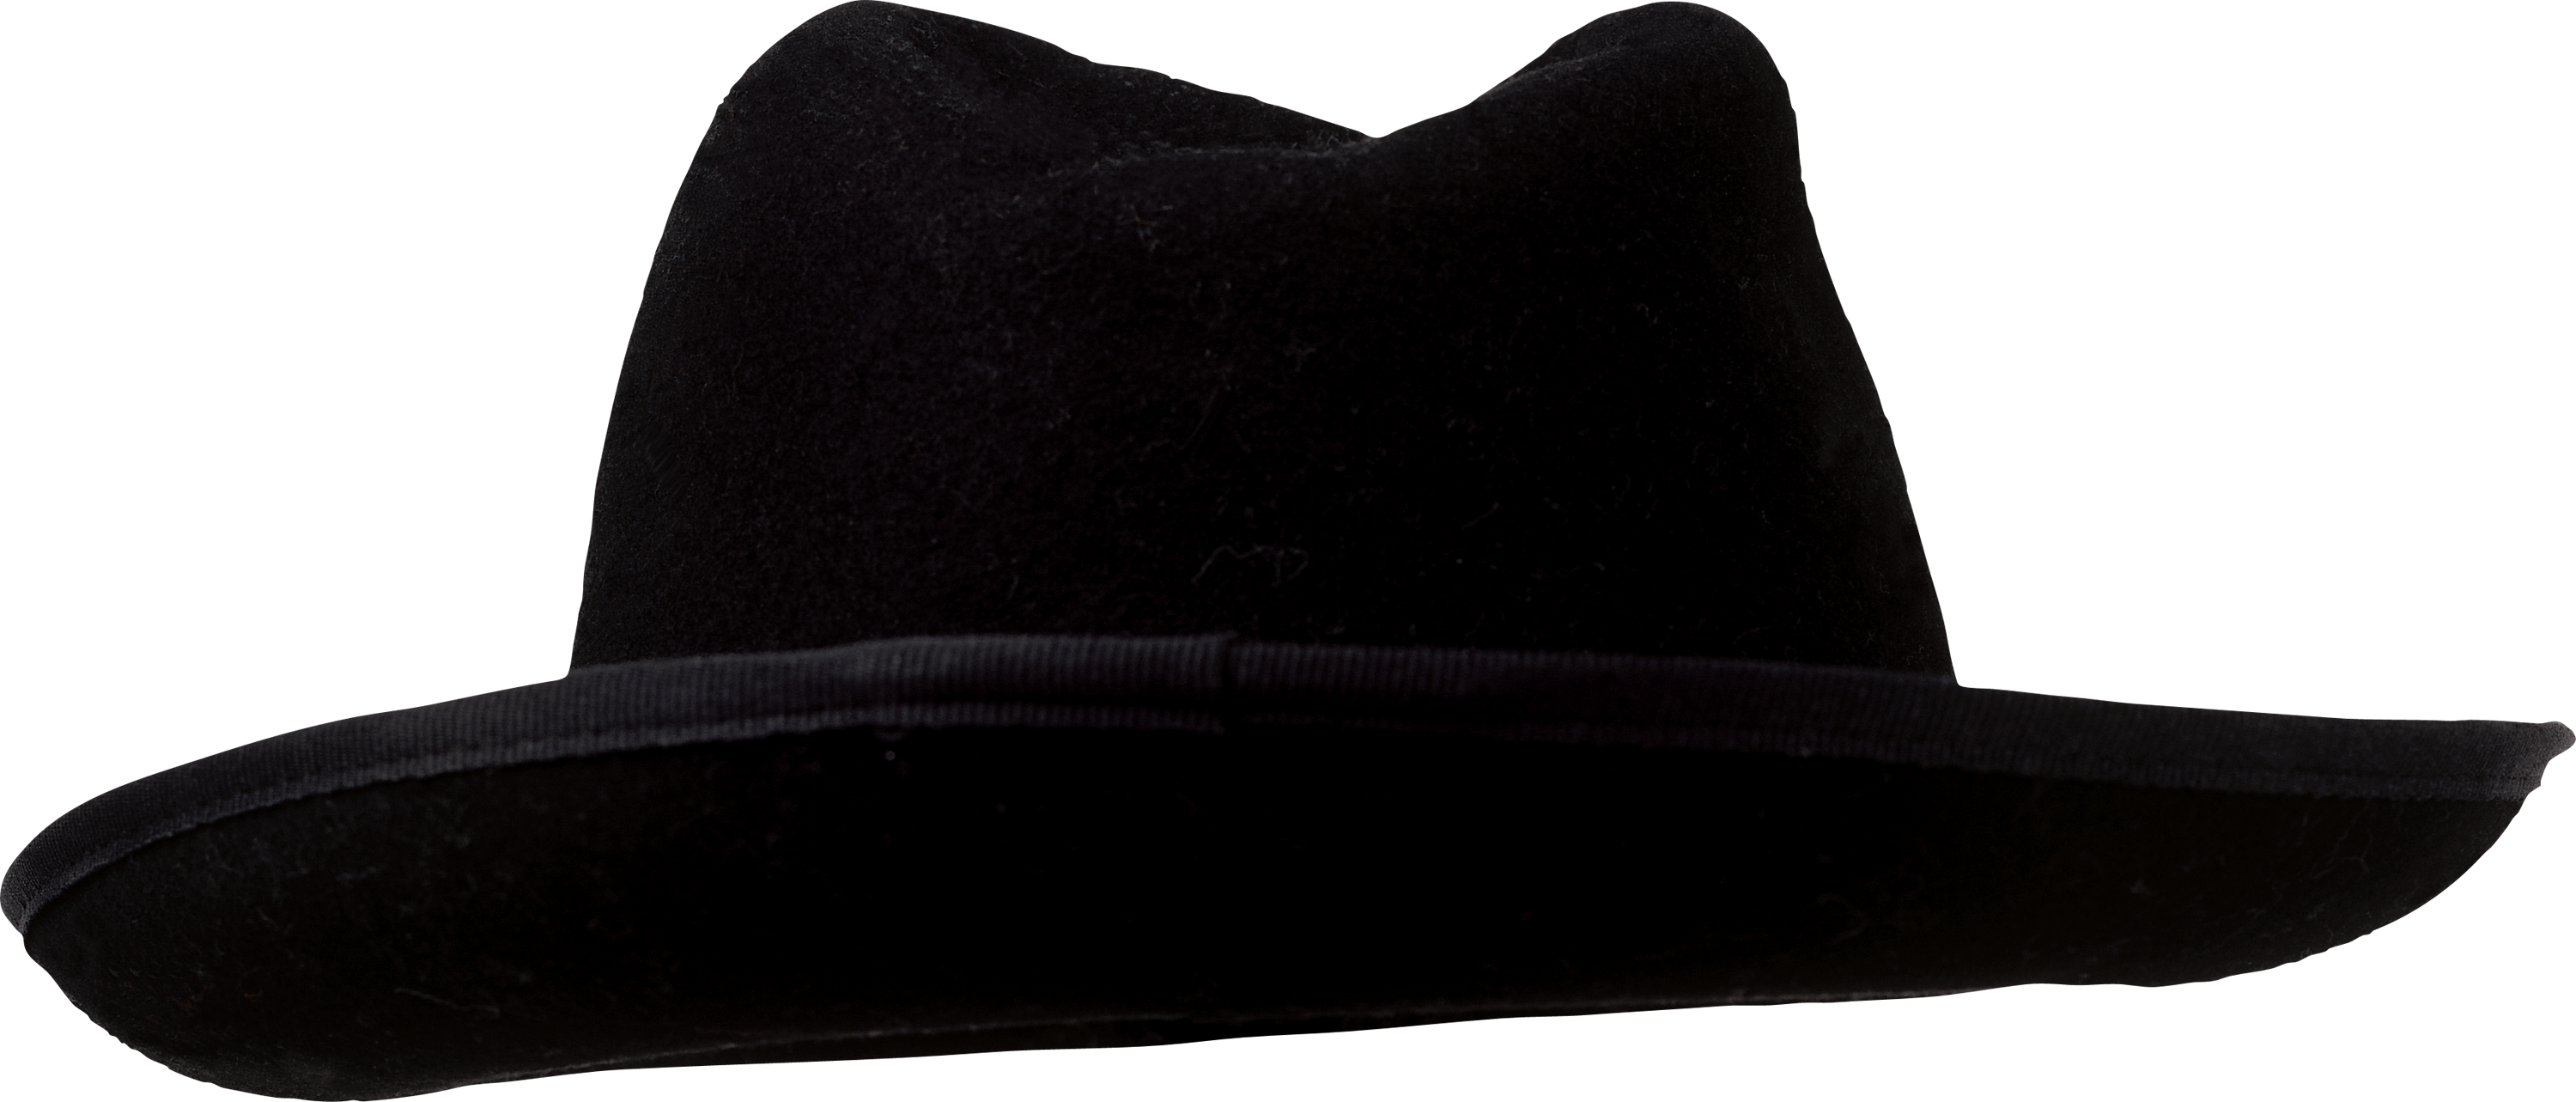 Black Hat PNG Image